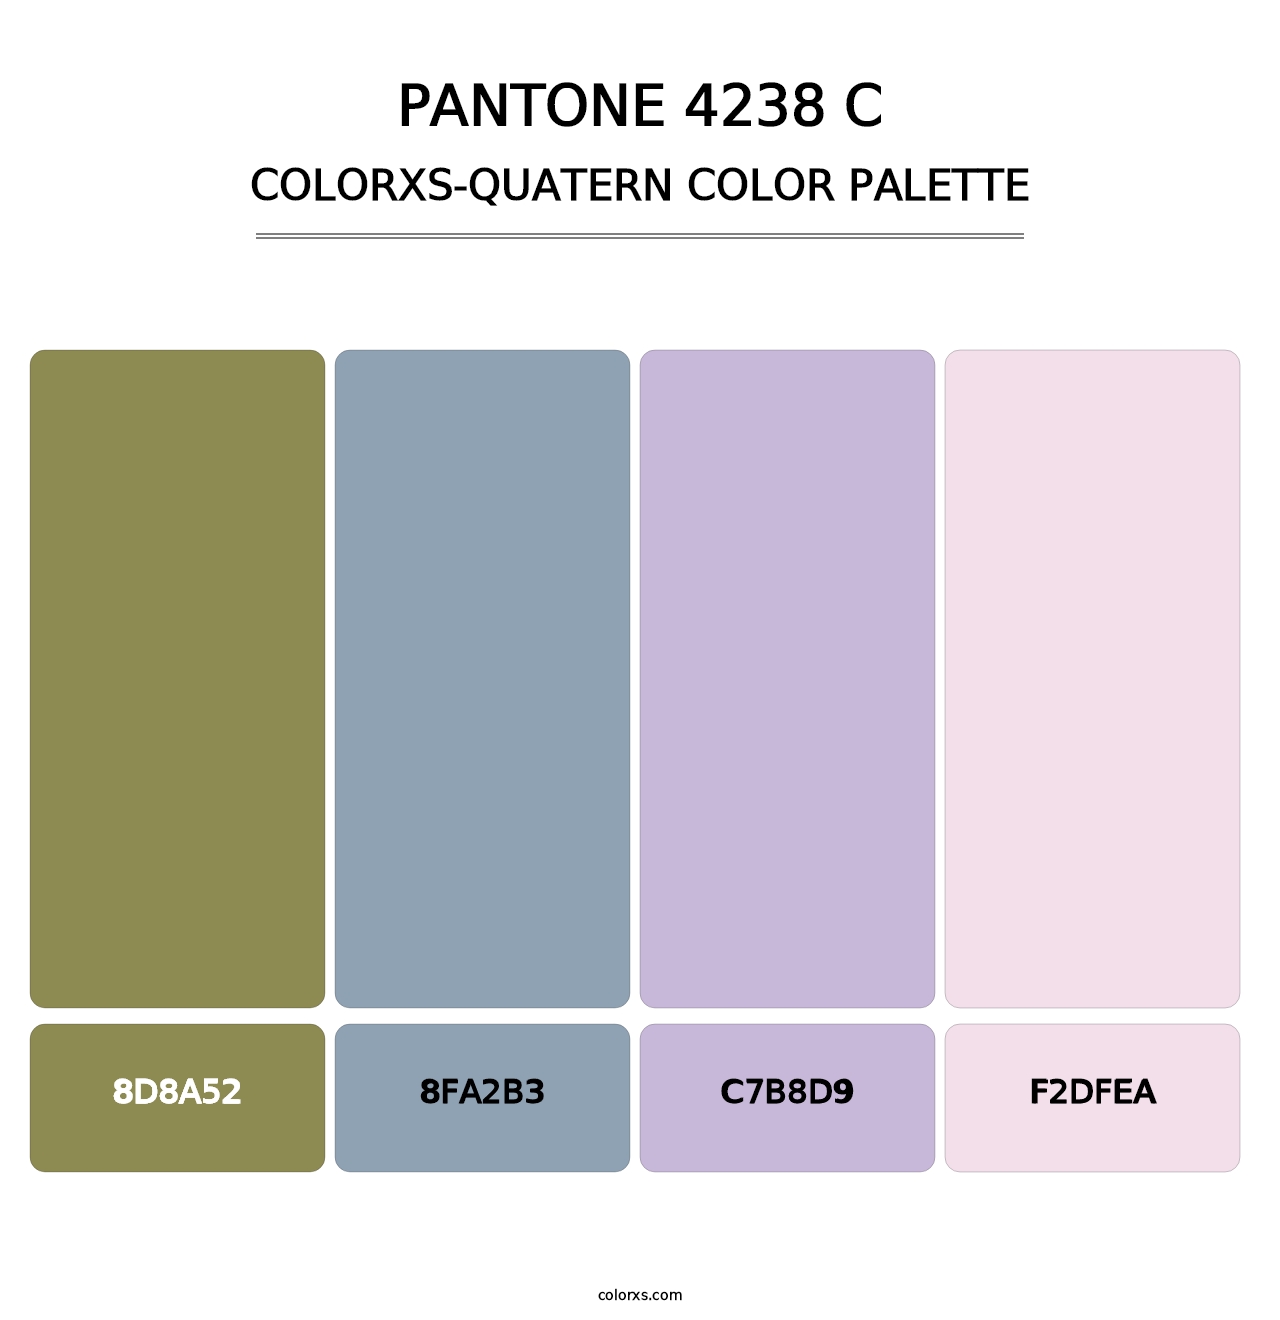 PANTONE 4238 C - Colorxs Quatern Palette